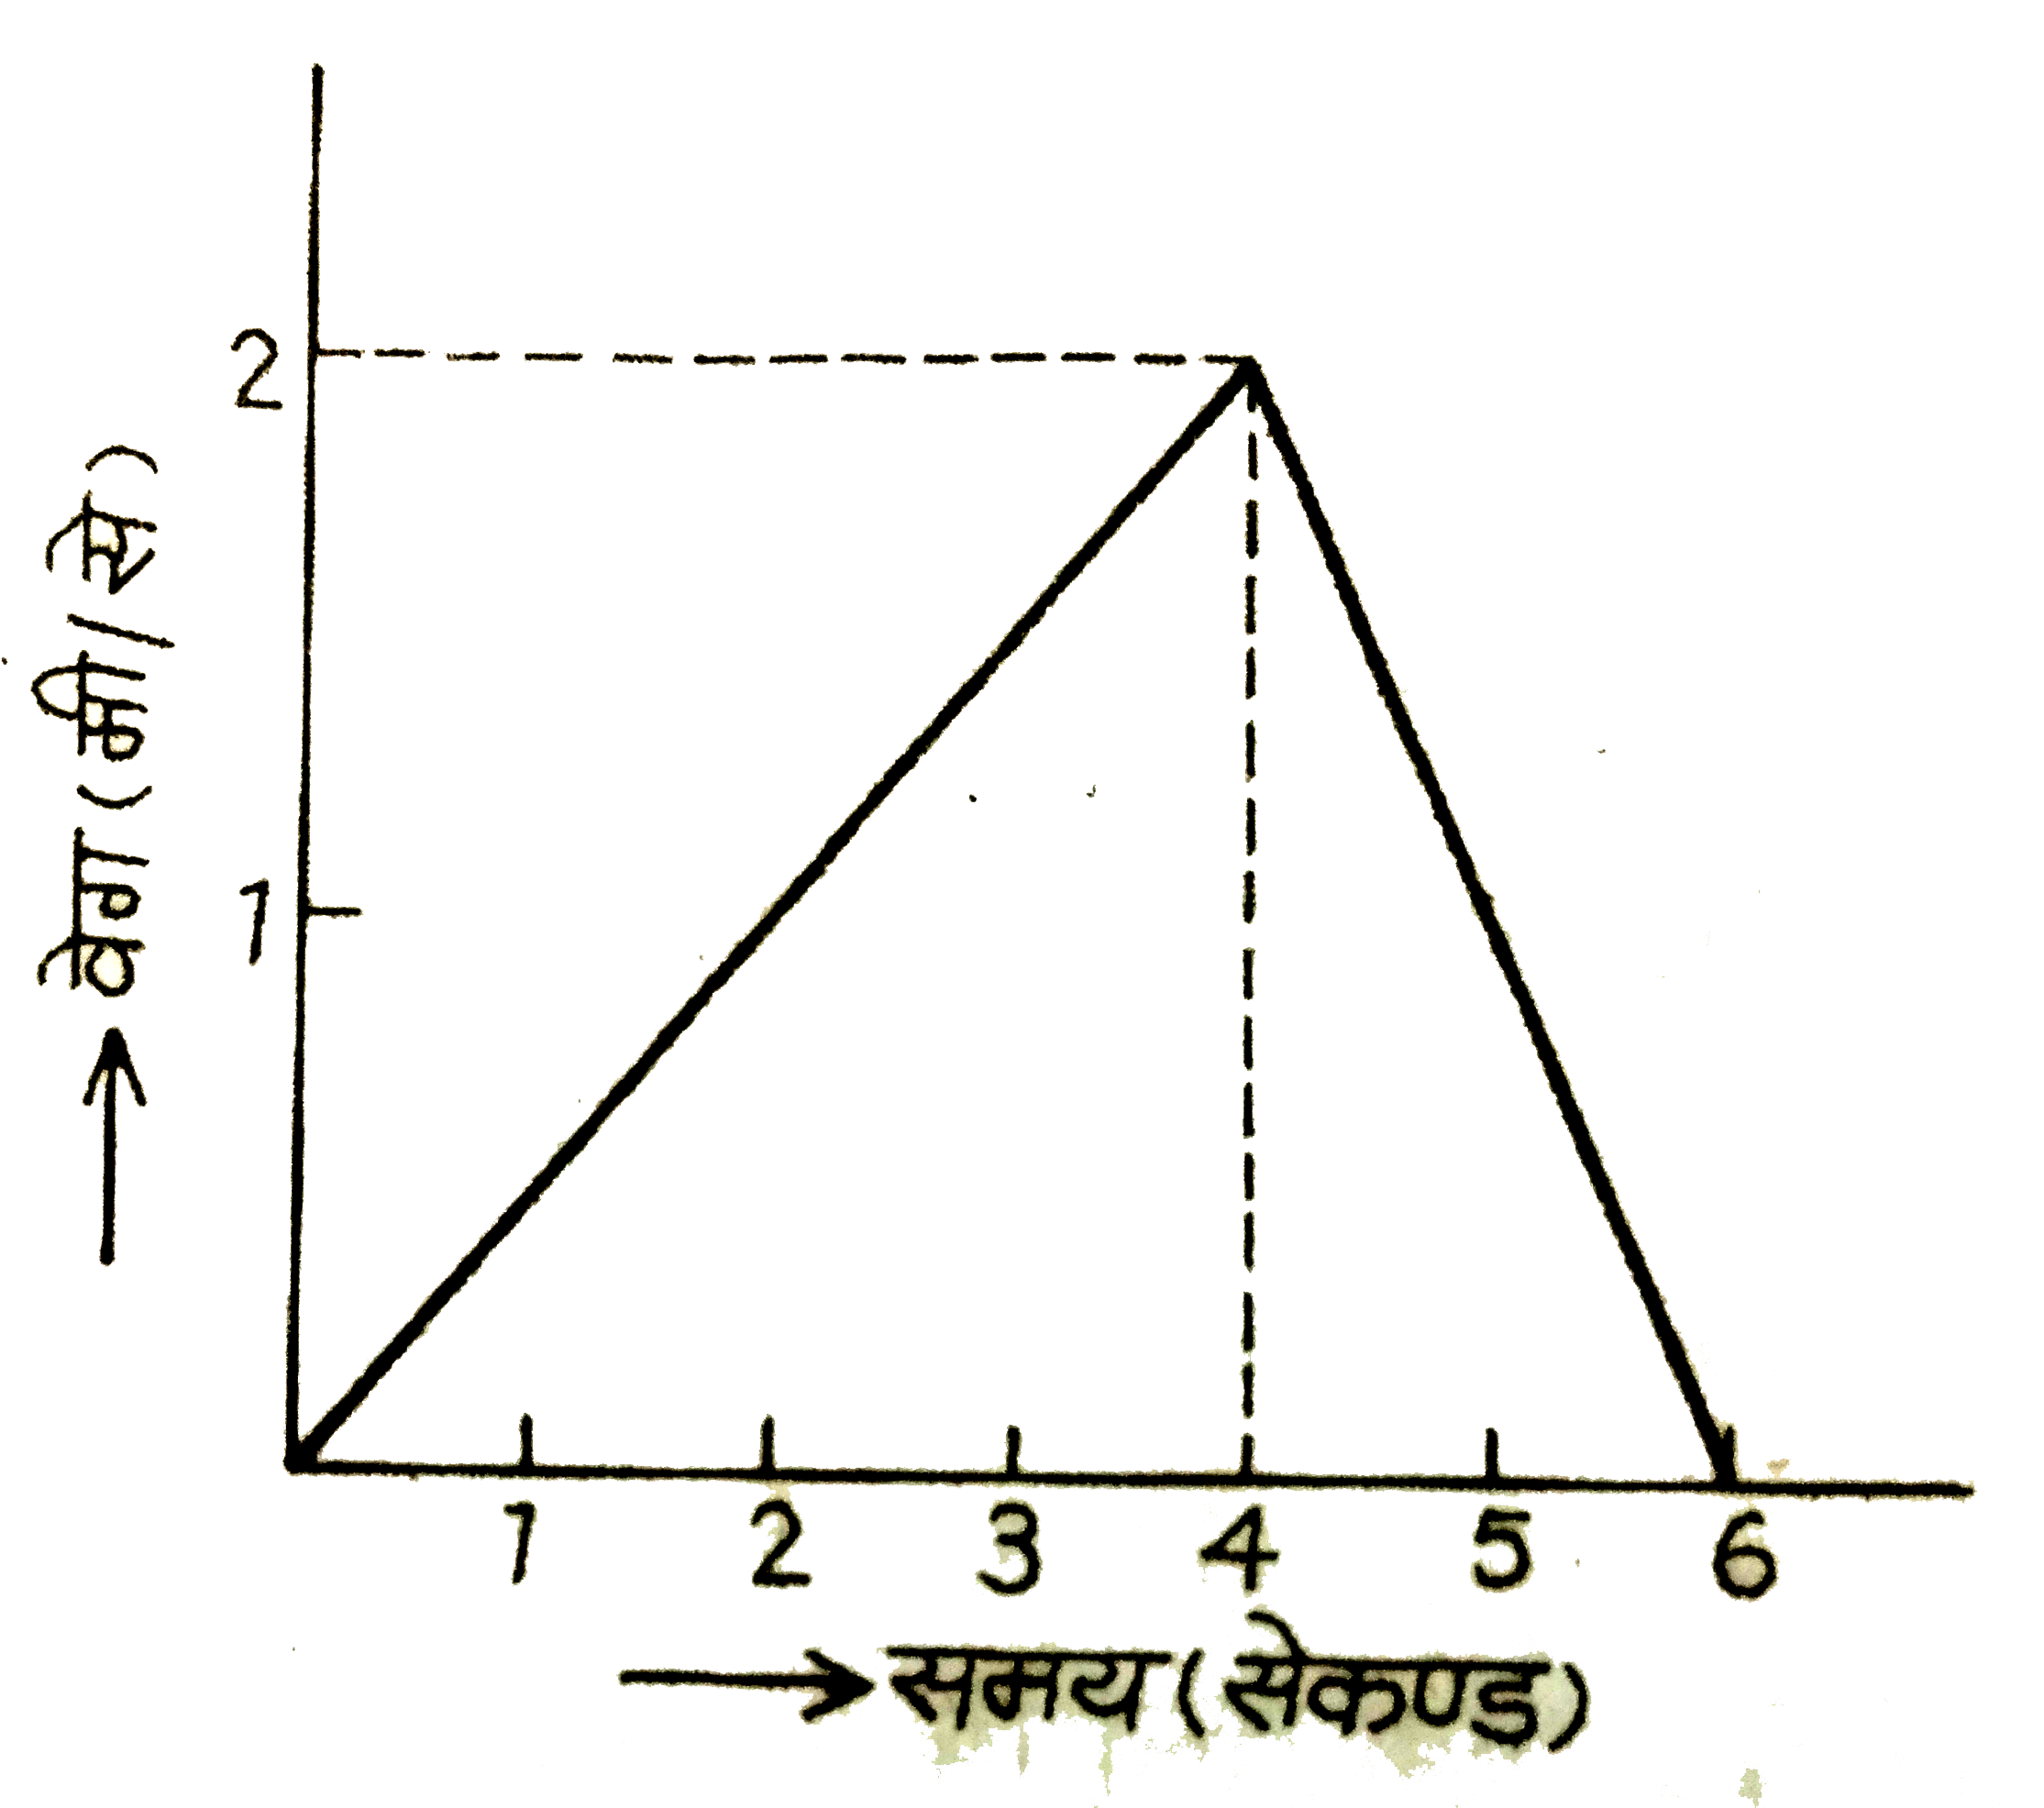 संलग्न चित्र में एक कण की त्रिजुरेखीय गति के लिये वेग-समय ग्राफ दिया गया है? निम्न के उतर दीजिये:   (i) क्या गति एकसमान है?   (ii) क्या यह एकसमान त्वरित गति है?   (iii) क्या कण गति की दिशा बदल लेता है ?   (iv) क्या कण द्वारा चली गयी दुरी 0 से 4 सेकंड के बीच वही है जो 4 से 6 सेकंड के बीच है? यदि नहीं तो उनकी तुलना कीजिये।   (v) 0 से 4सेकंड तक त्वरण ज्ञात कीजिये तथा 4 से 6 सेकंड के बीच मंदन ।